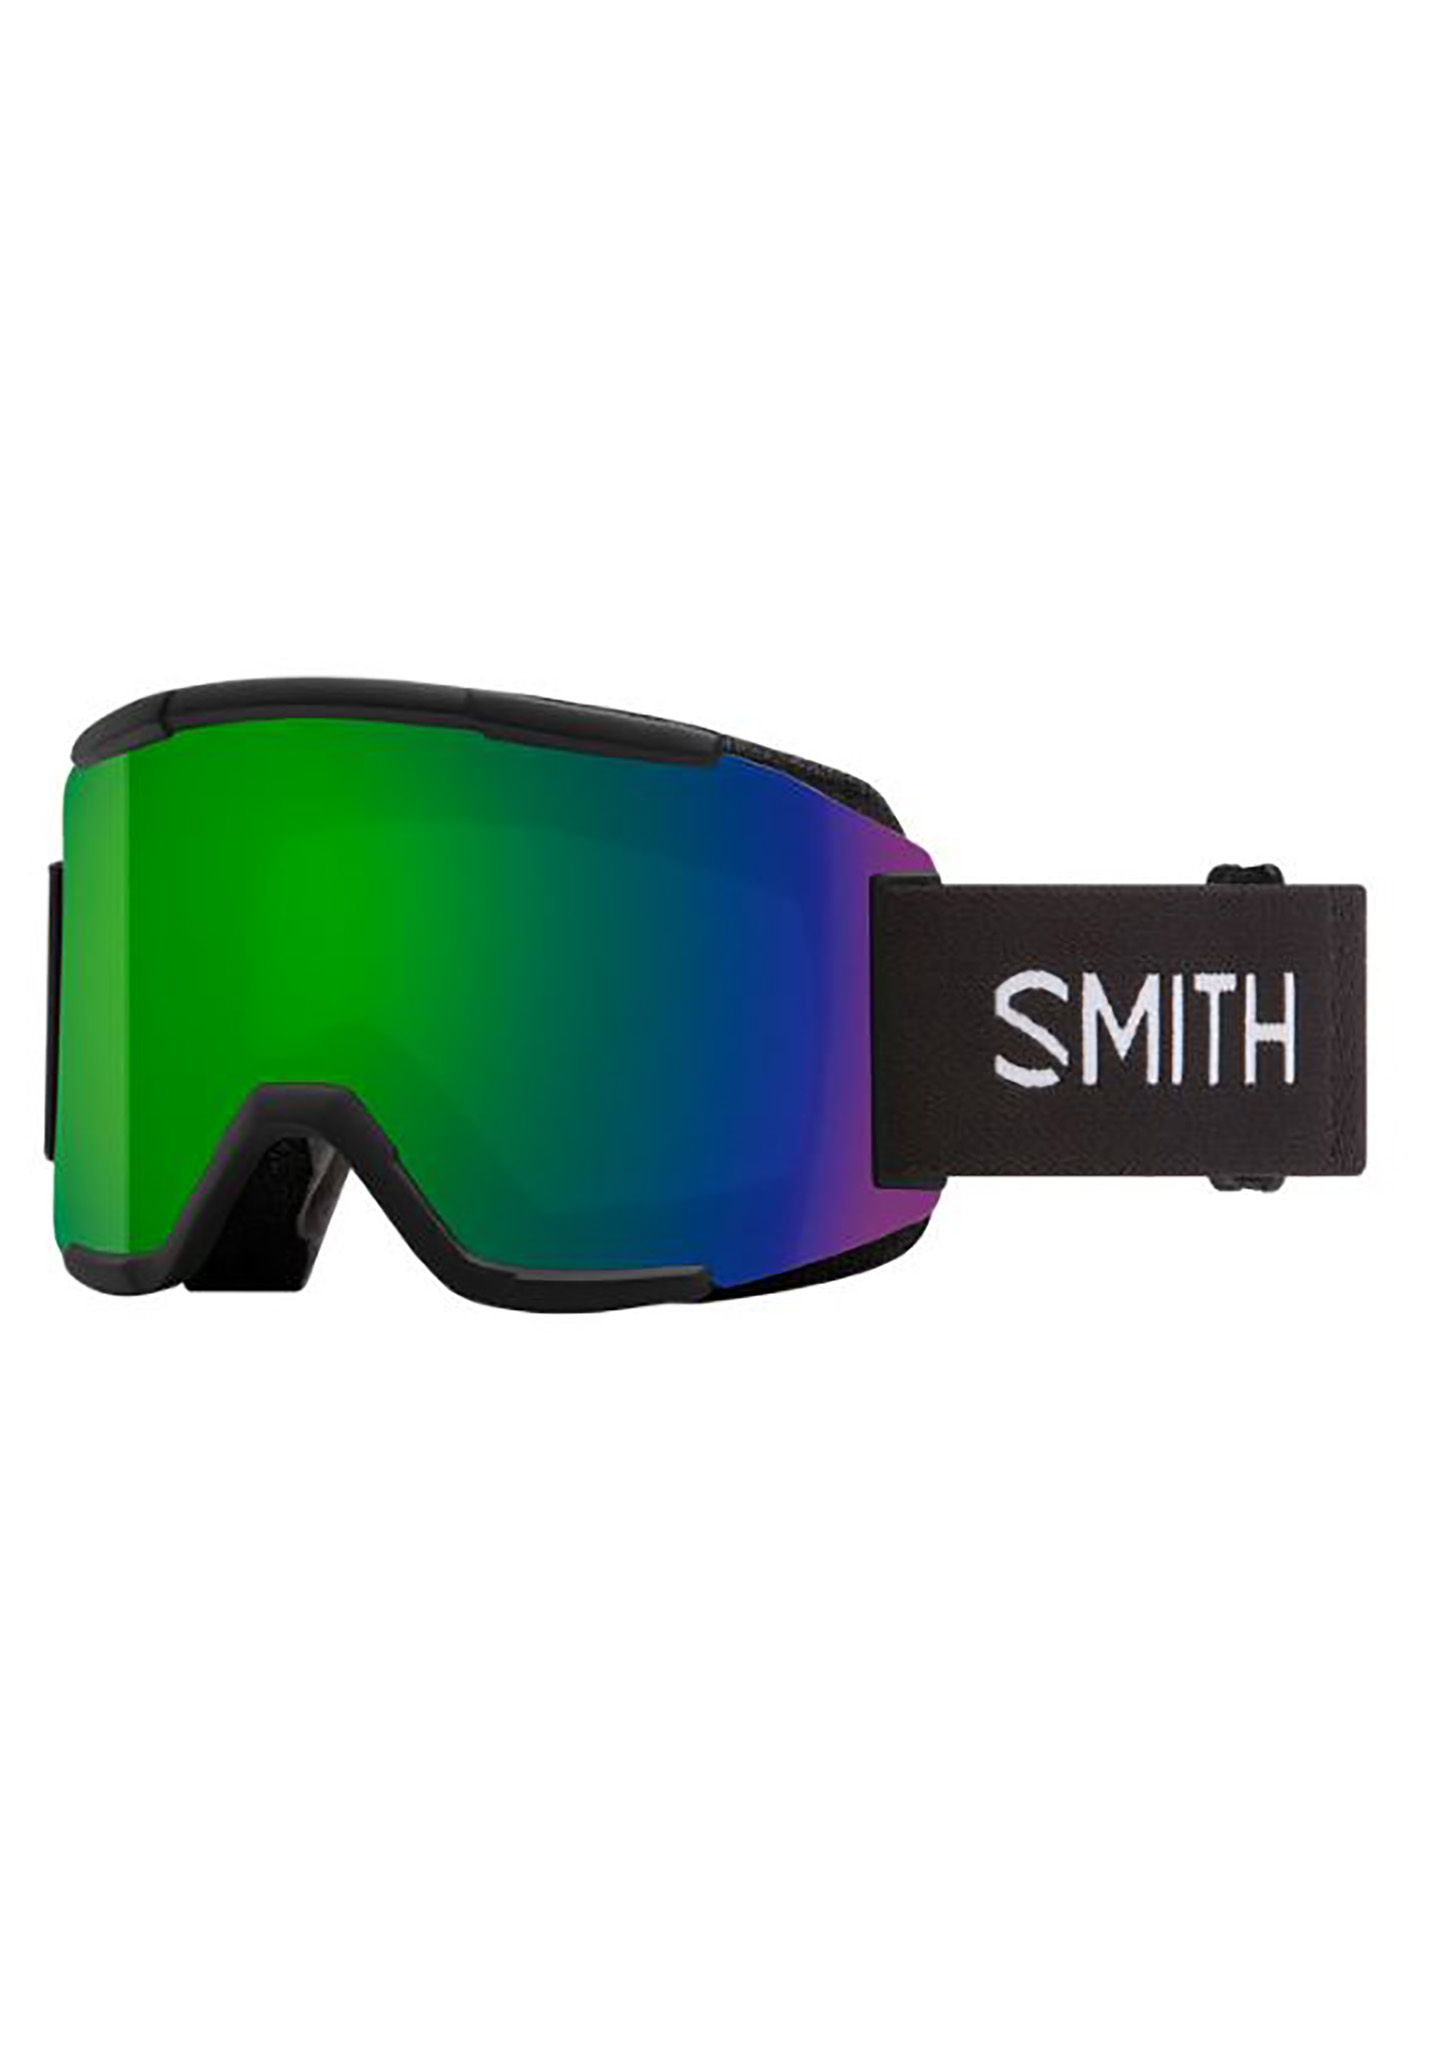 Smith Squad Snowboardbrillen schwarz/sonnengrüner spiegel One Size